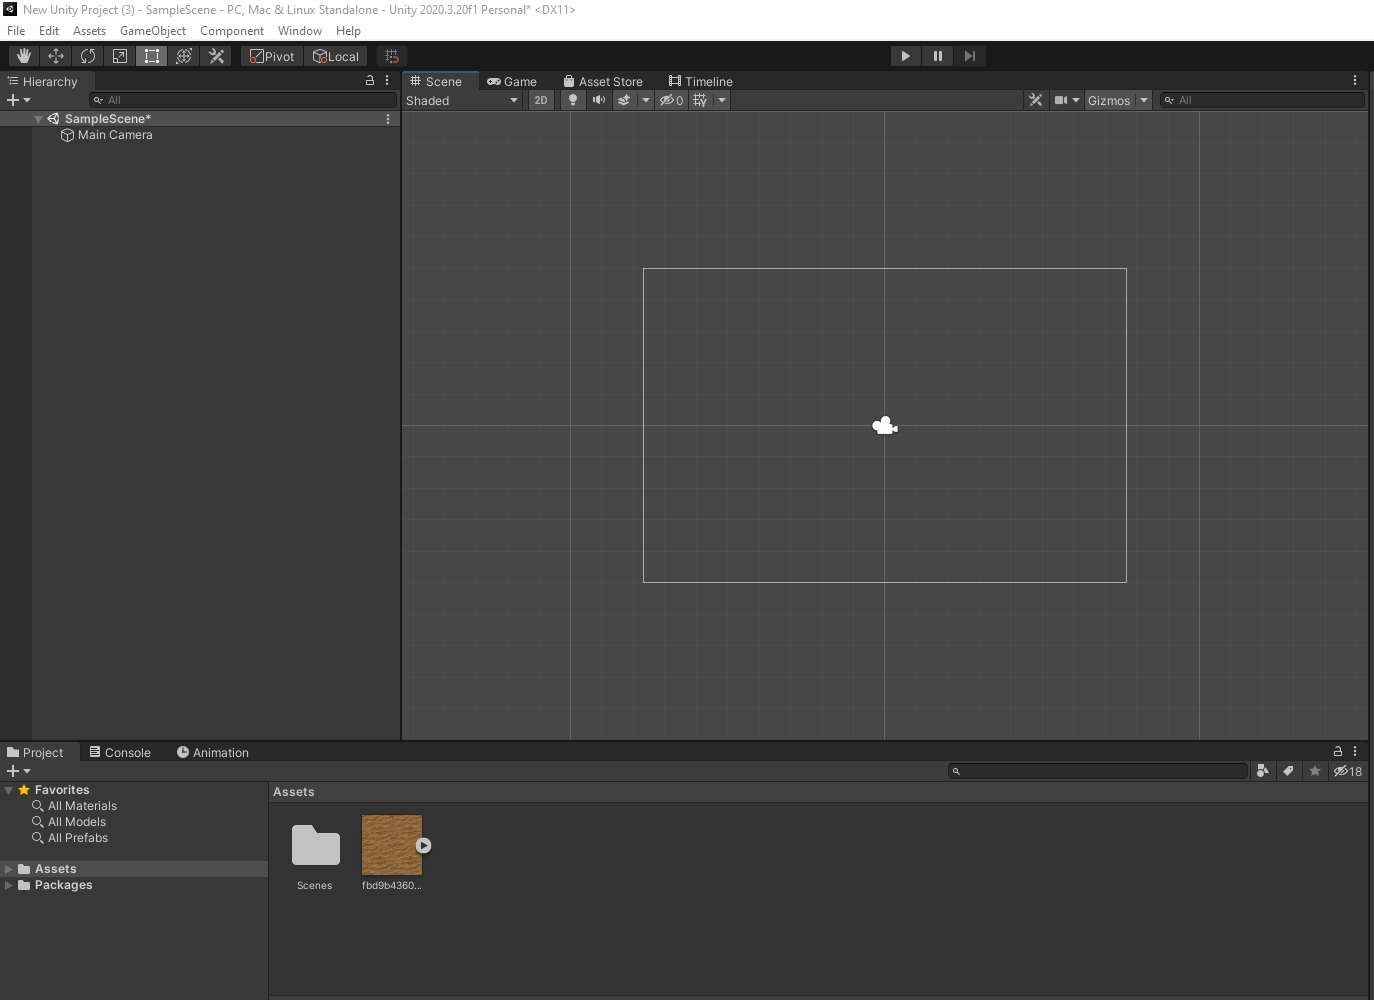 Cómo crear una textura tileable en juego 2D de Unity